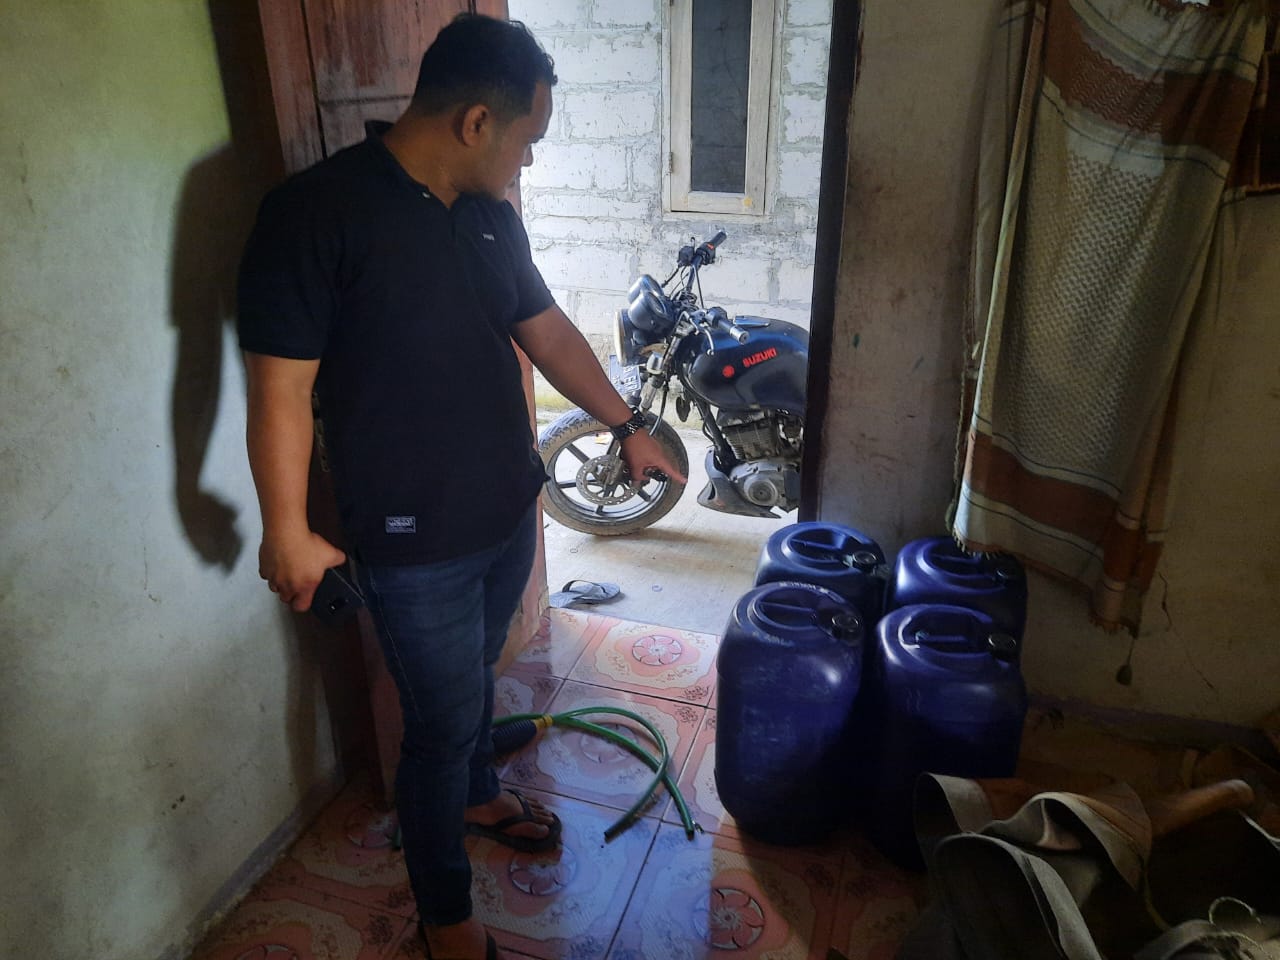 Beli Pertalite di SPBU Lalu Dijual Eceran, Pria di Tangerang Ditangkap Polisi